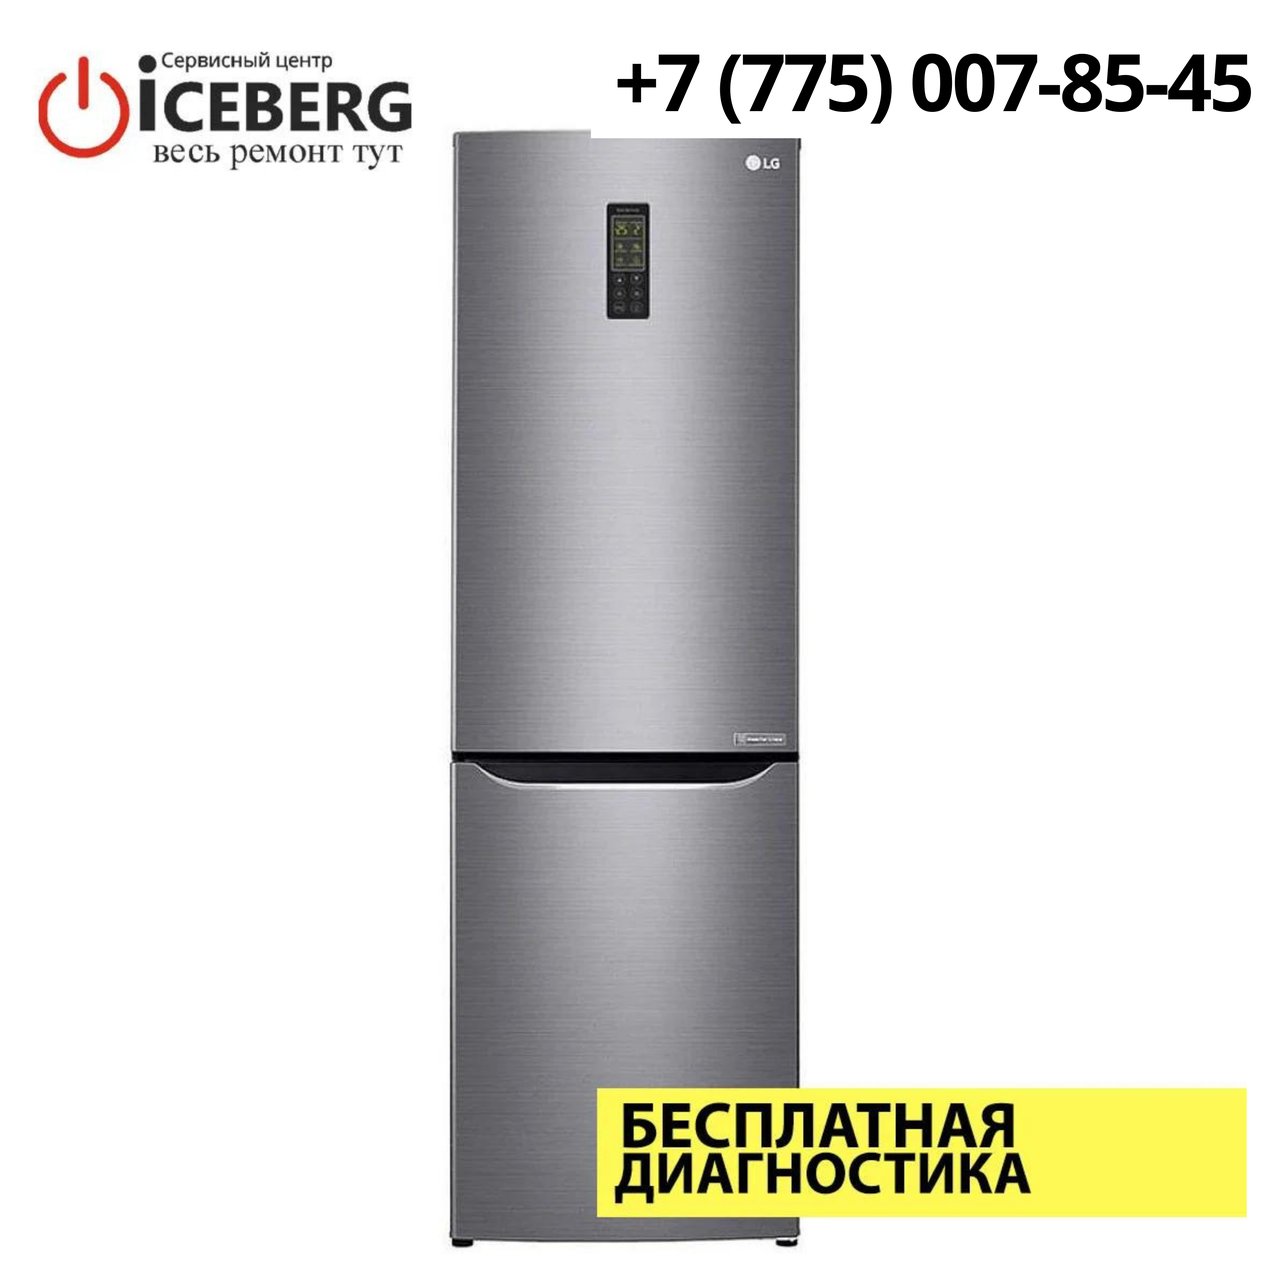 Ремонт холодильников LG в Алматы